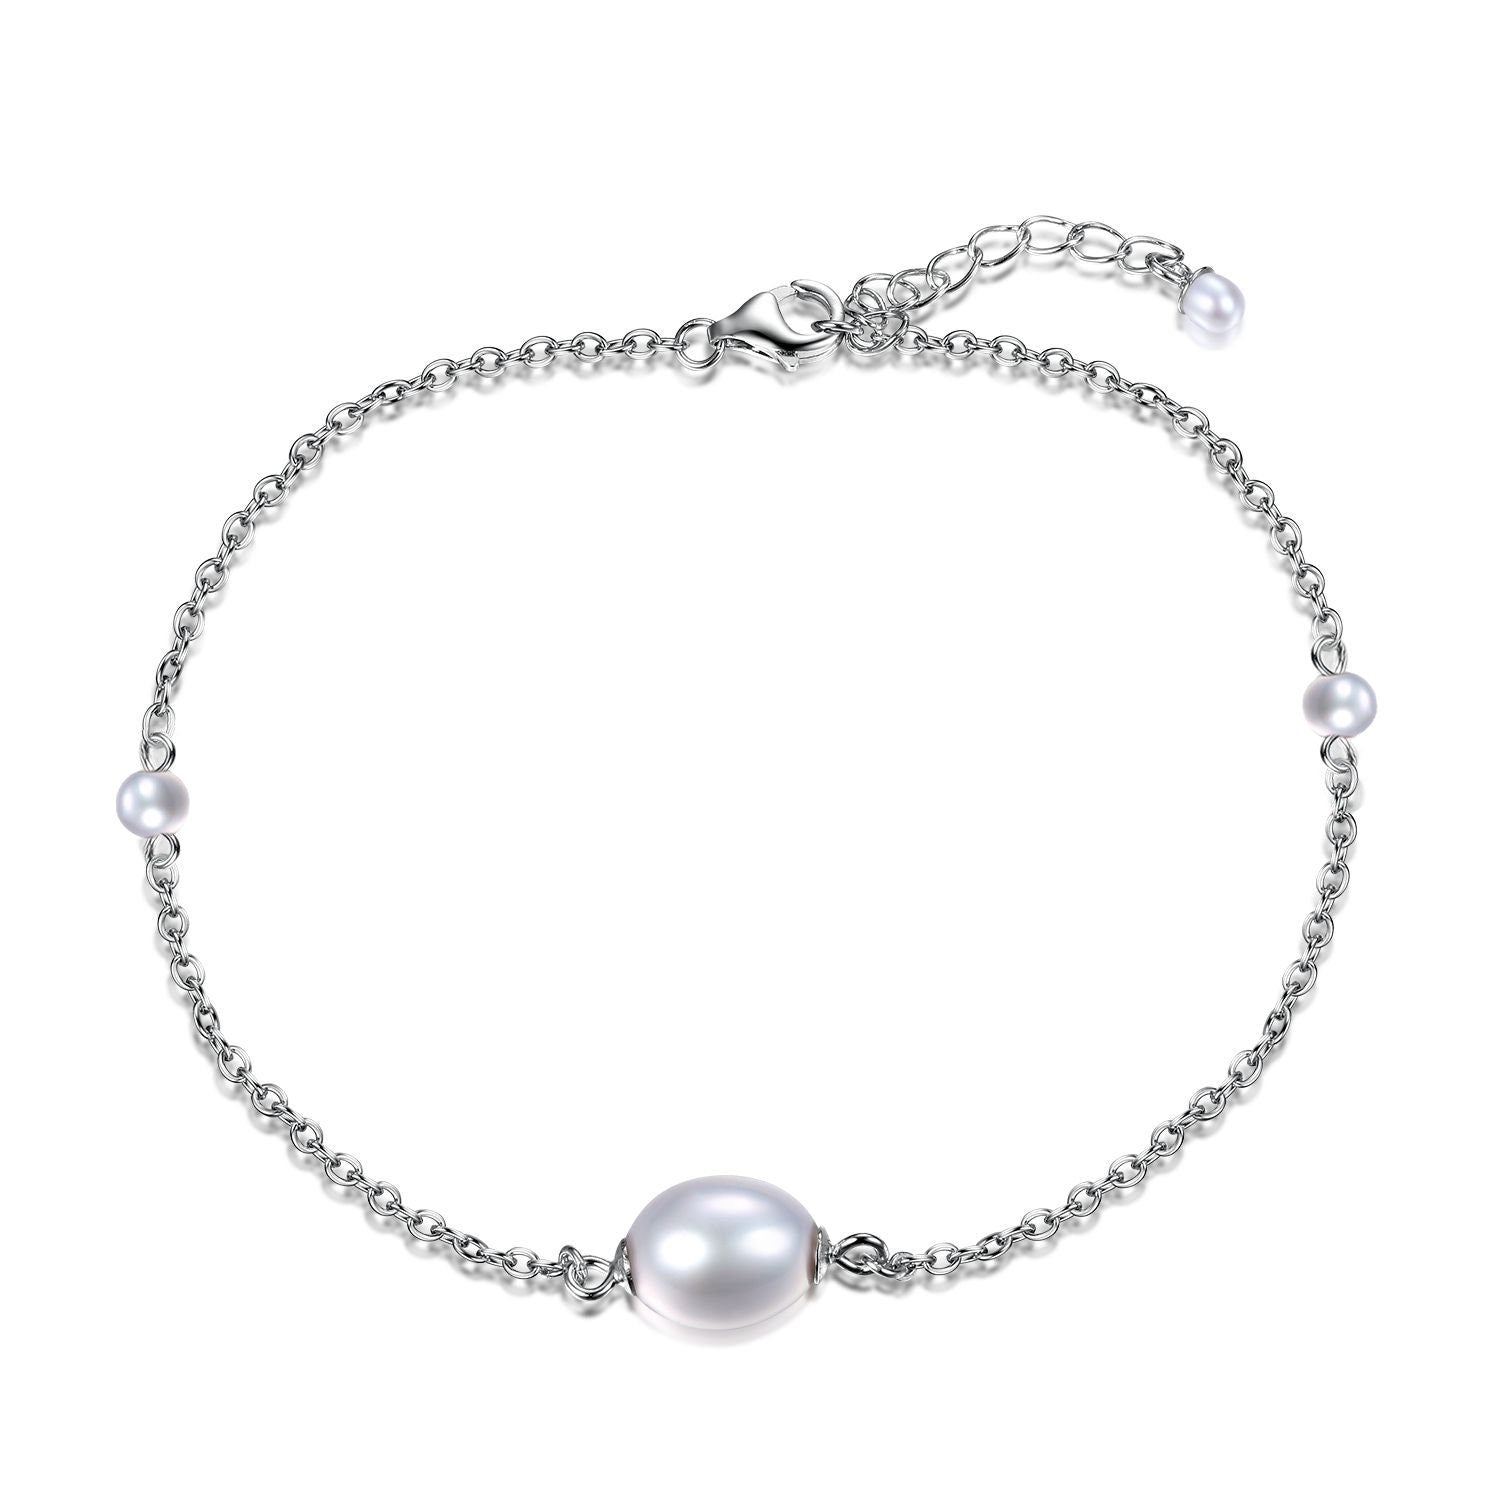 Pearl Bracelet For Women, Freshwater Pearl Bracelet, Bridesmaid Gift, Sterling Silver Bracelet, Birthday Gift Idea, Gift For Mum